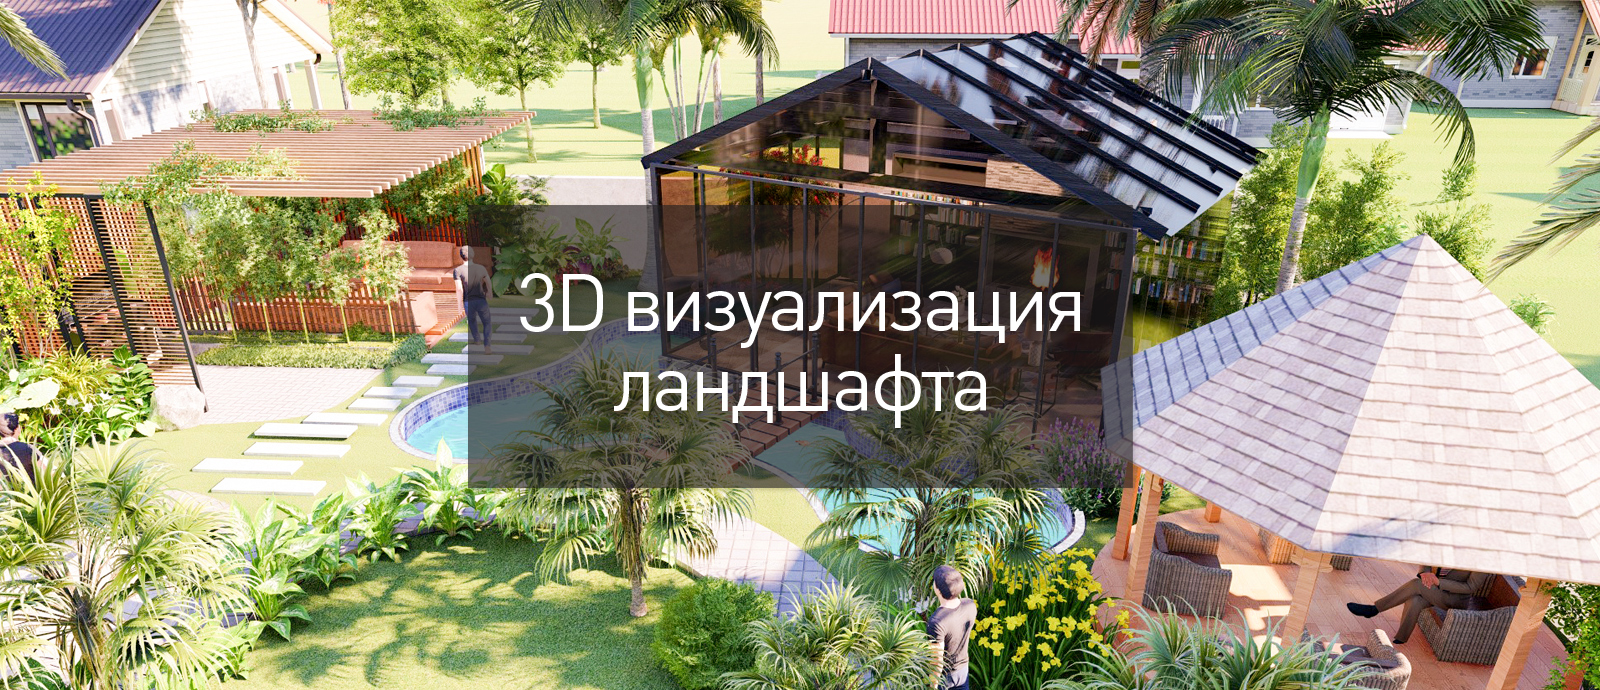 3D визуализация ландшафтного дизайна - по желанию Заказчика